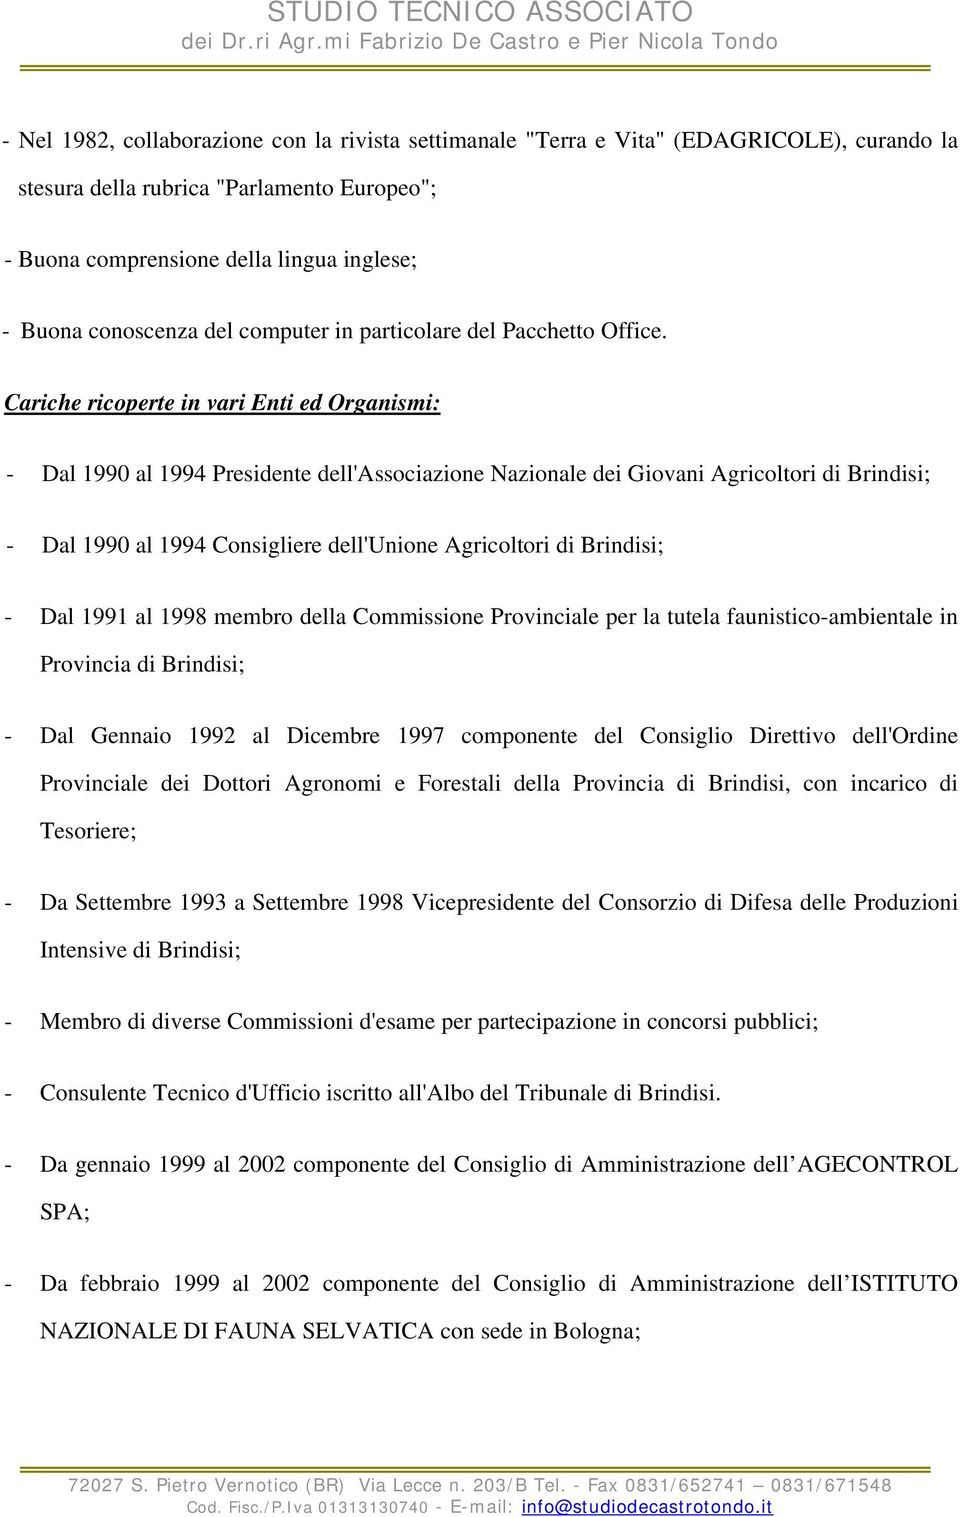 Cariche ricoperte in vari Enti ed Organismi: - Dal 1990 al 1994 Presidente dell'associazione Nazionale dei Giovani Agricoltori di Brindisi; - Dal 1990 al 1994 Consigliere dell'unione Agricoltori di